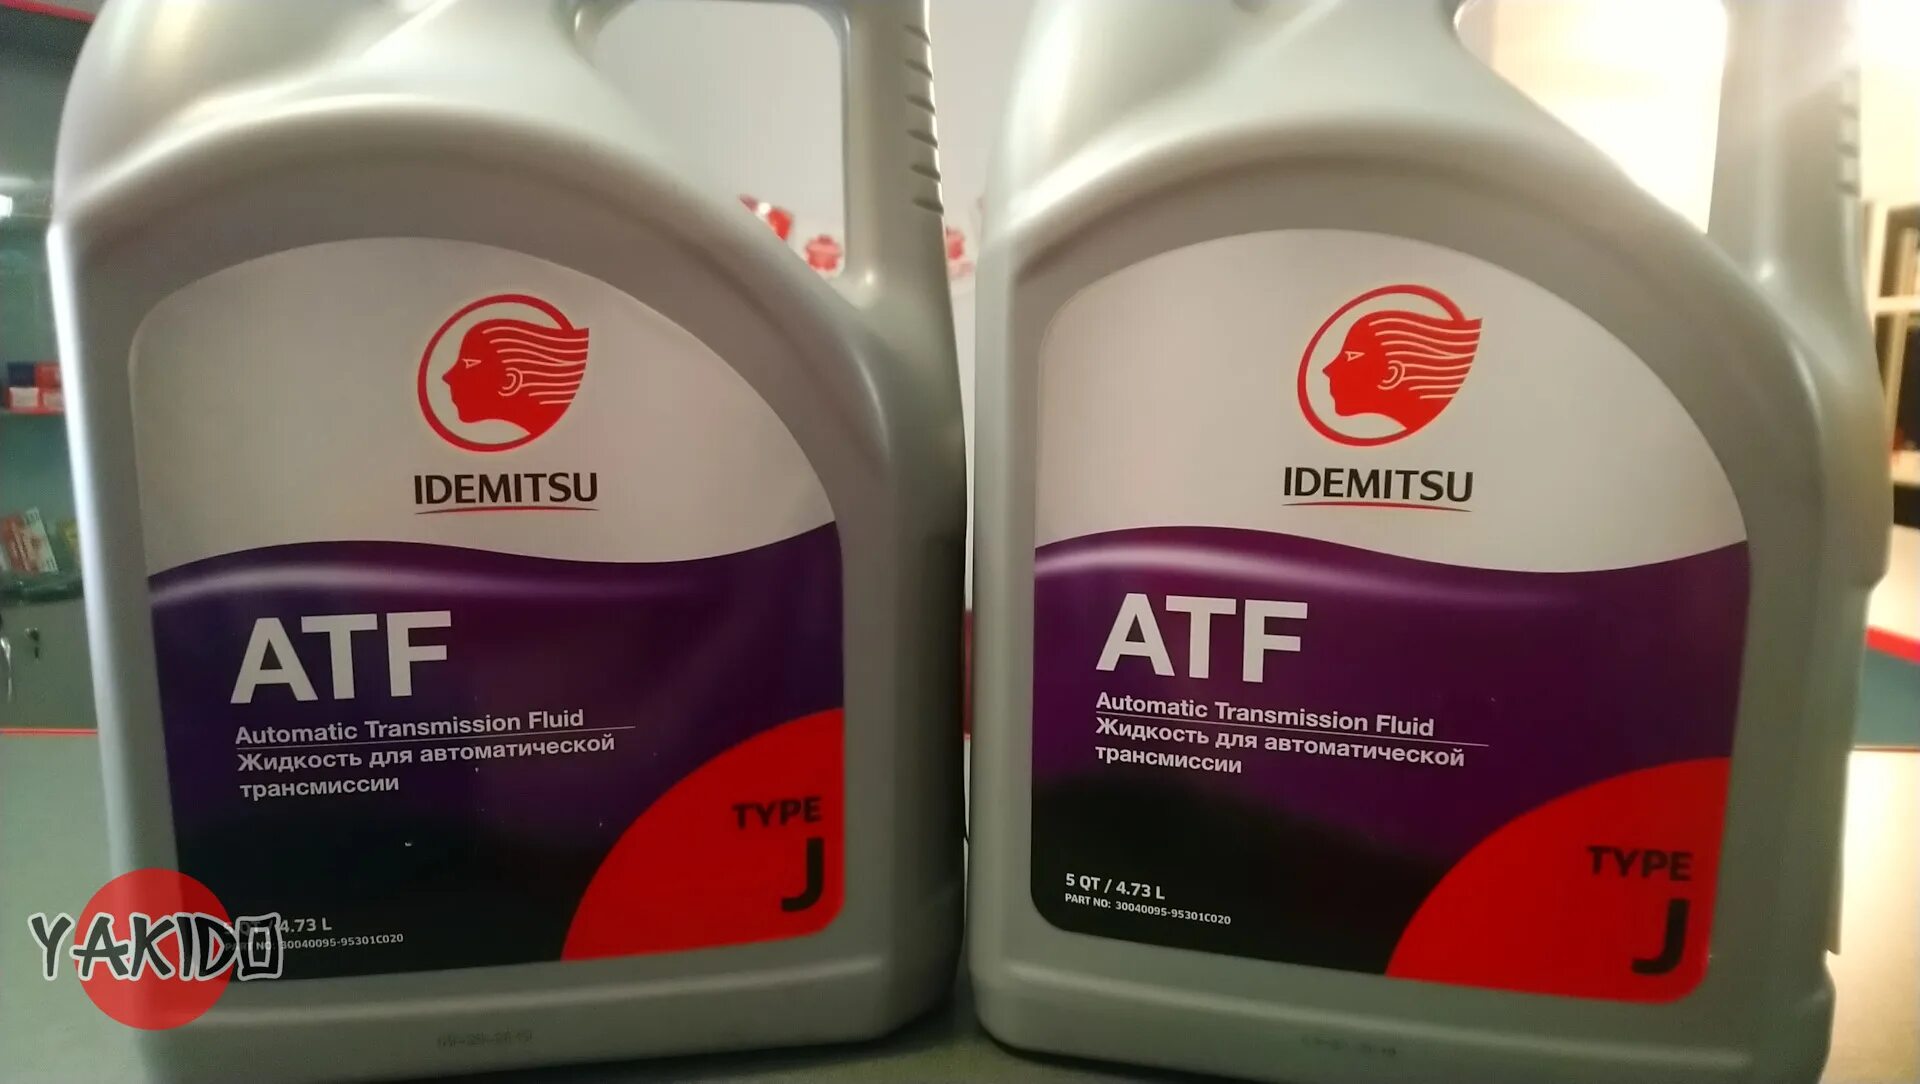 Idemitsu atf m. Idemitsu ATF Type h Plus 4 литра артикул. Idemitsu ATF 3 литра. Idemitsu ATF sp3. Idemitsu ATF 2 литра.